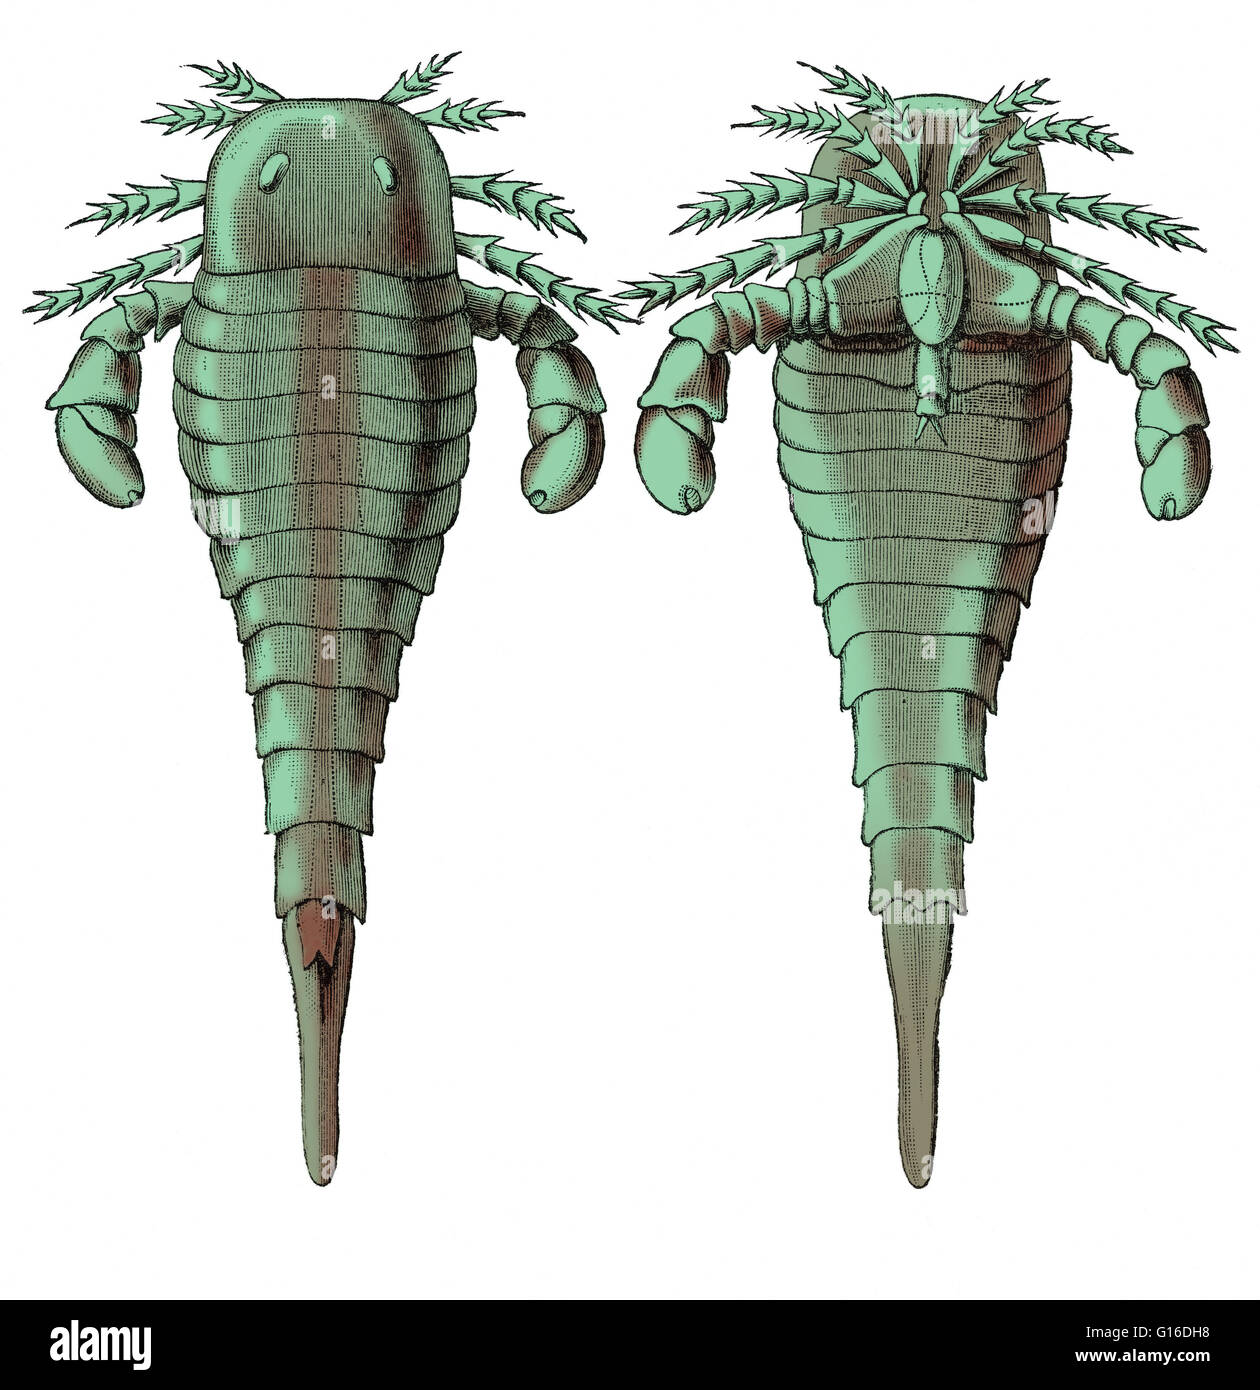 Illustration von Eurypterus Remipes, ein Eurypterid oder Meer Skorpion aus der Silurian Periode von Louis Figuiers die Welt vor der Sintflut, 1867 amerikanische Ausgabe. Dorsalen und ventralen Ansichten. Dieses Bild wurde Farbe verbessert. Stockfoto